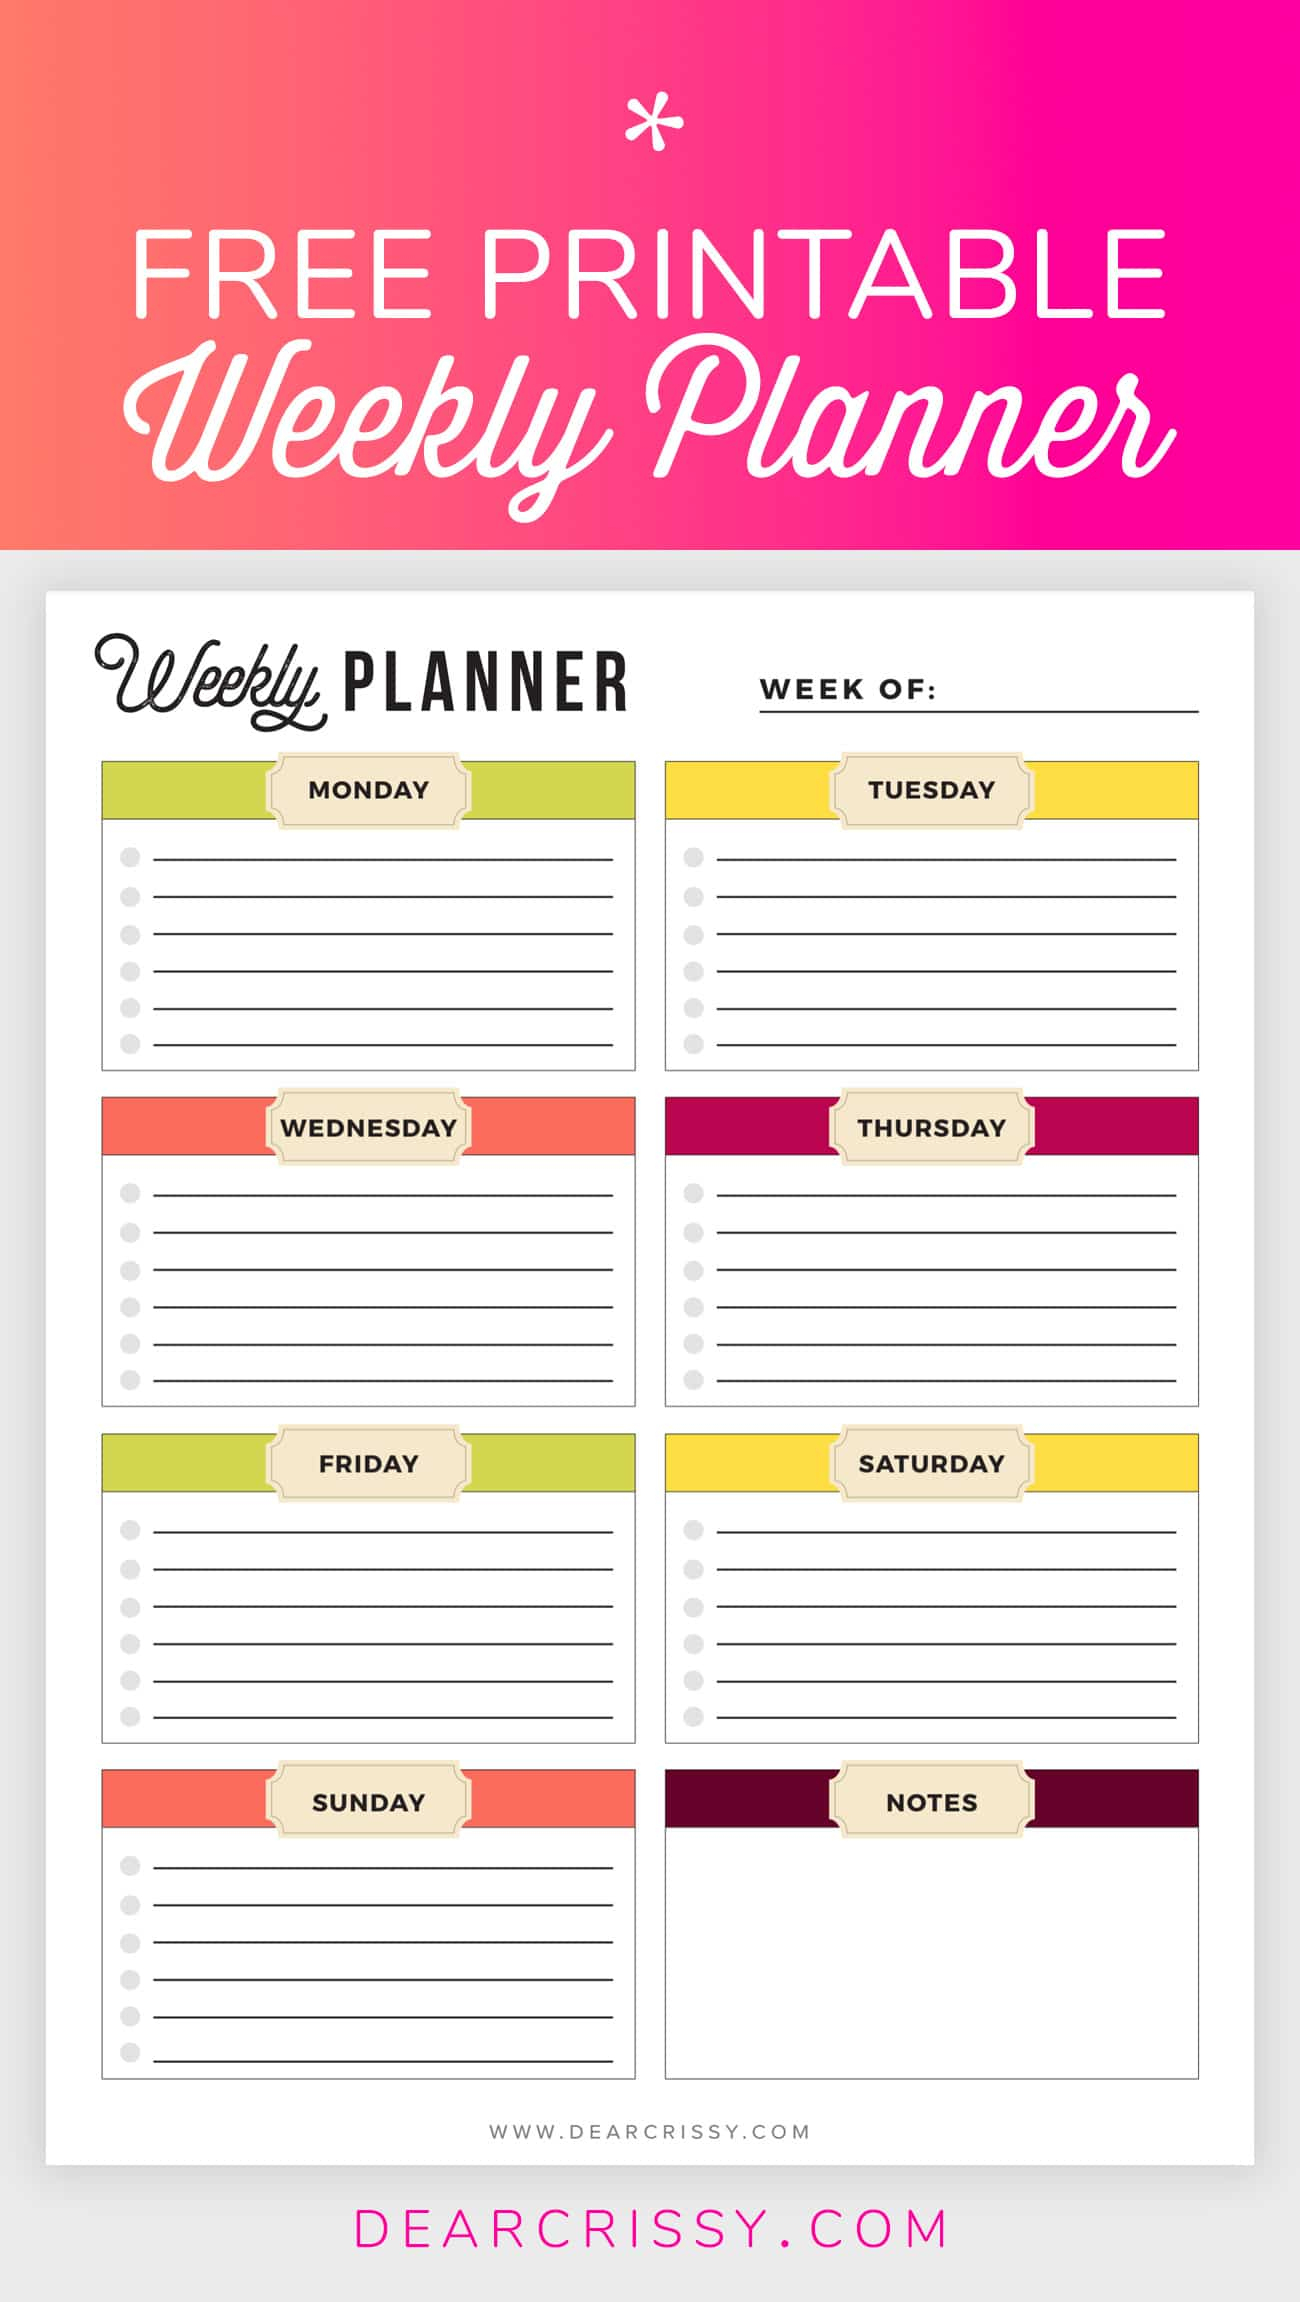 Free Printable Weekly Planner - Weekly Planner Printable! - Planner Printable Free